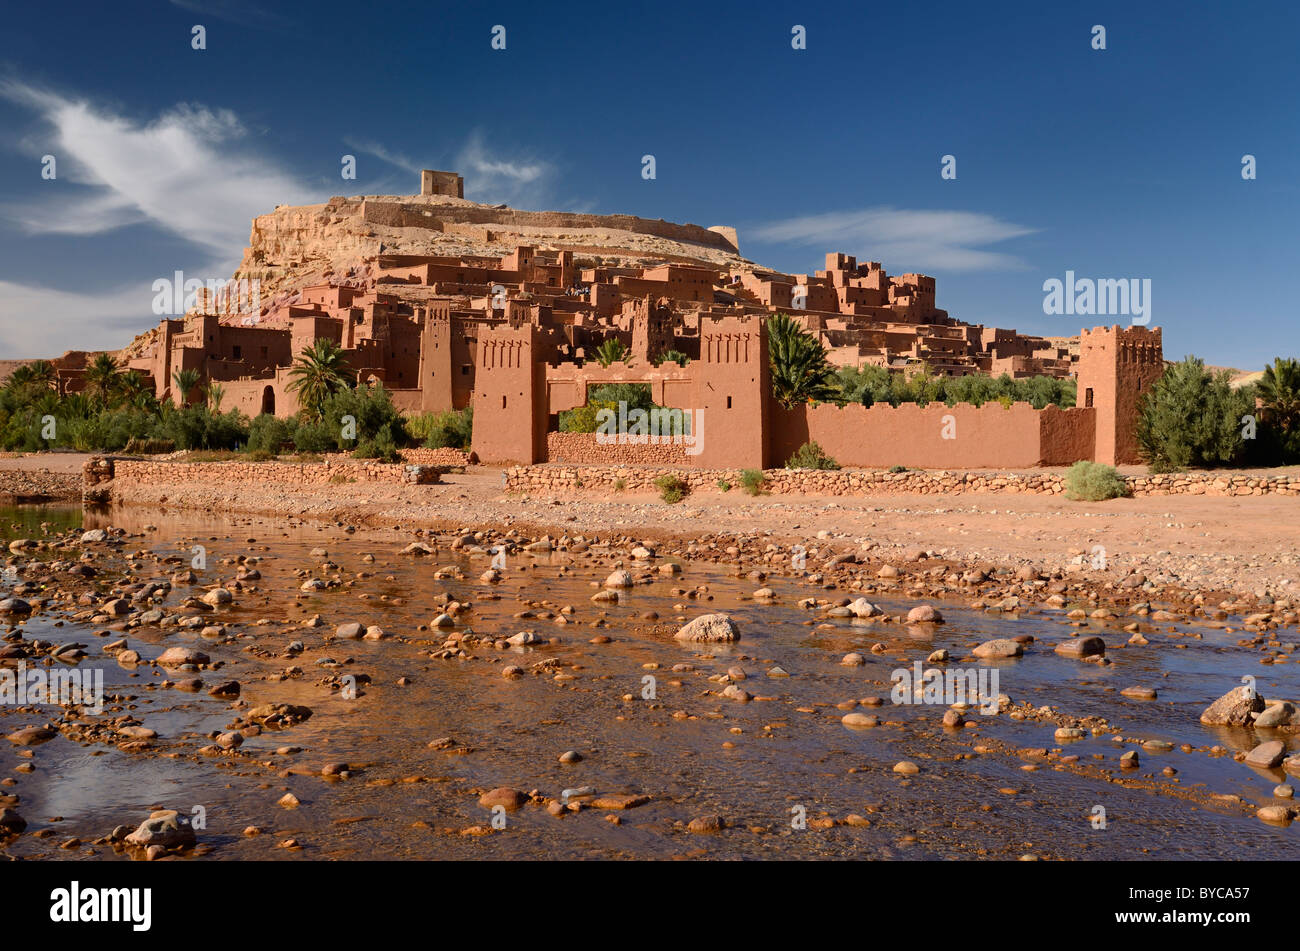 Antica città rossa di Ait Benhaddou con acqua poco profonda del fiume ounila o wadi mellah vicino a ouarzazate marocco Foto Stock